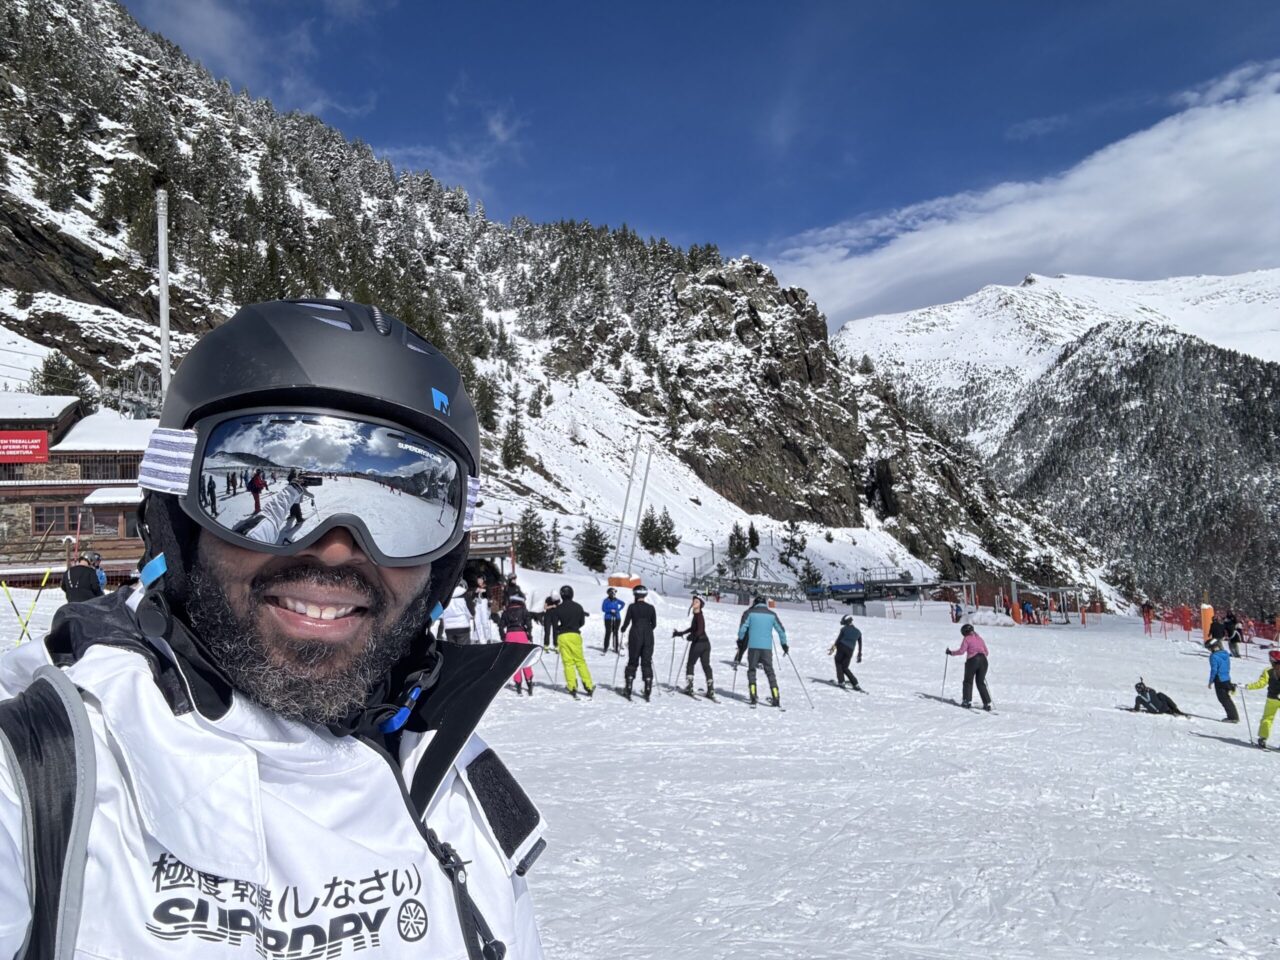 Founder Daniel on the slopes